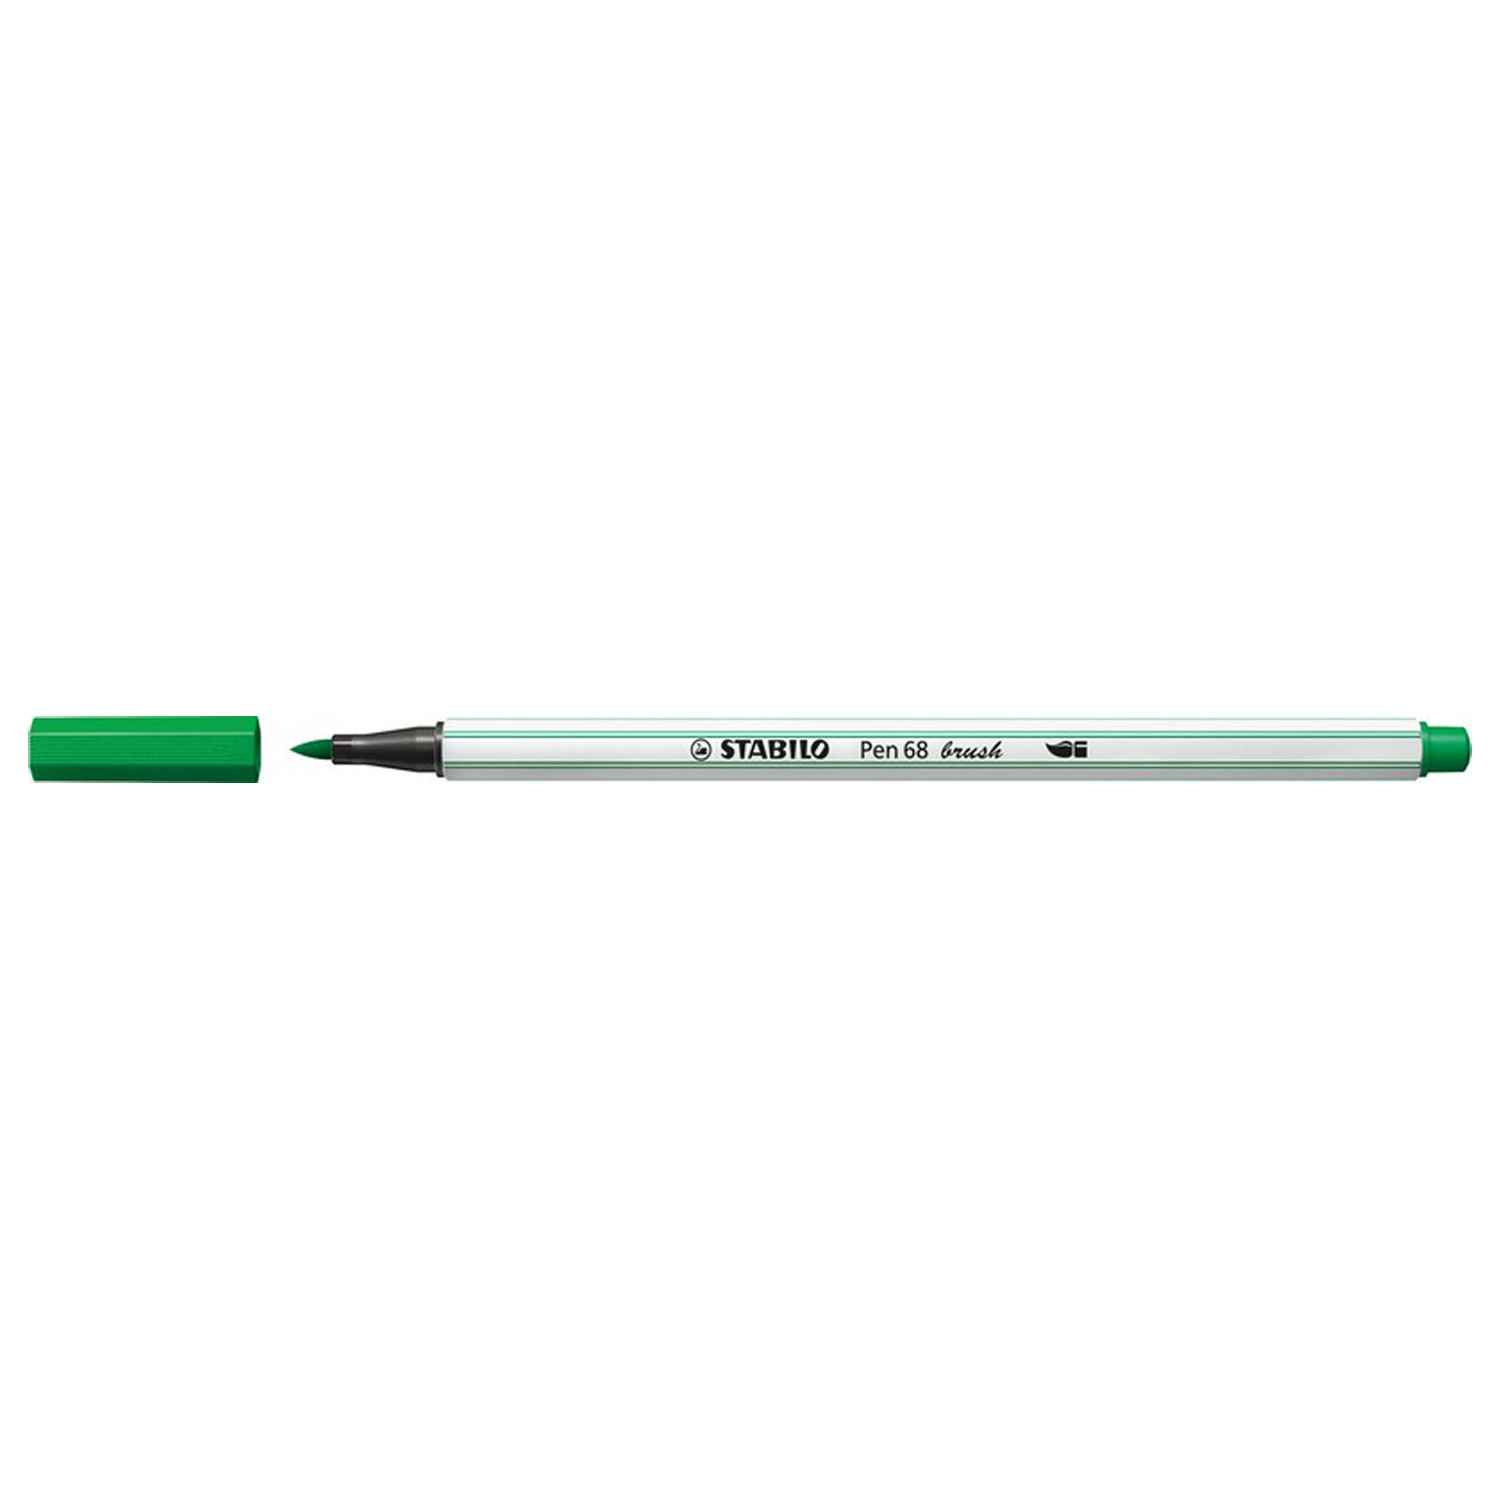 STABILO Pen 68 Brush 36 - Groen